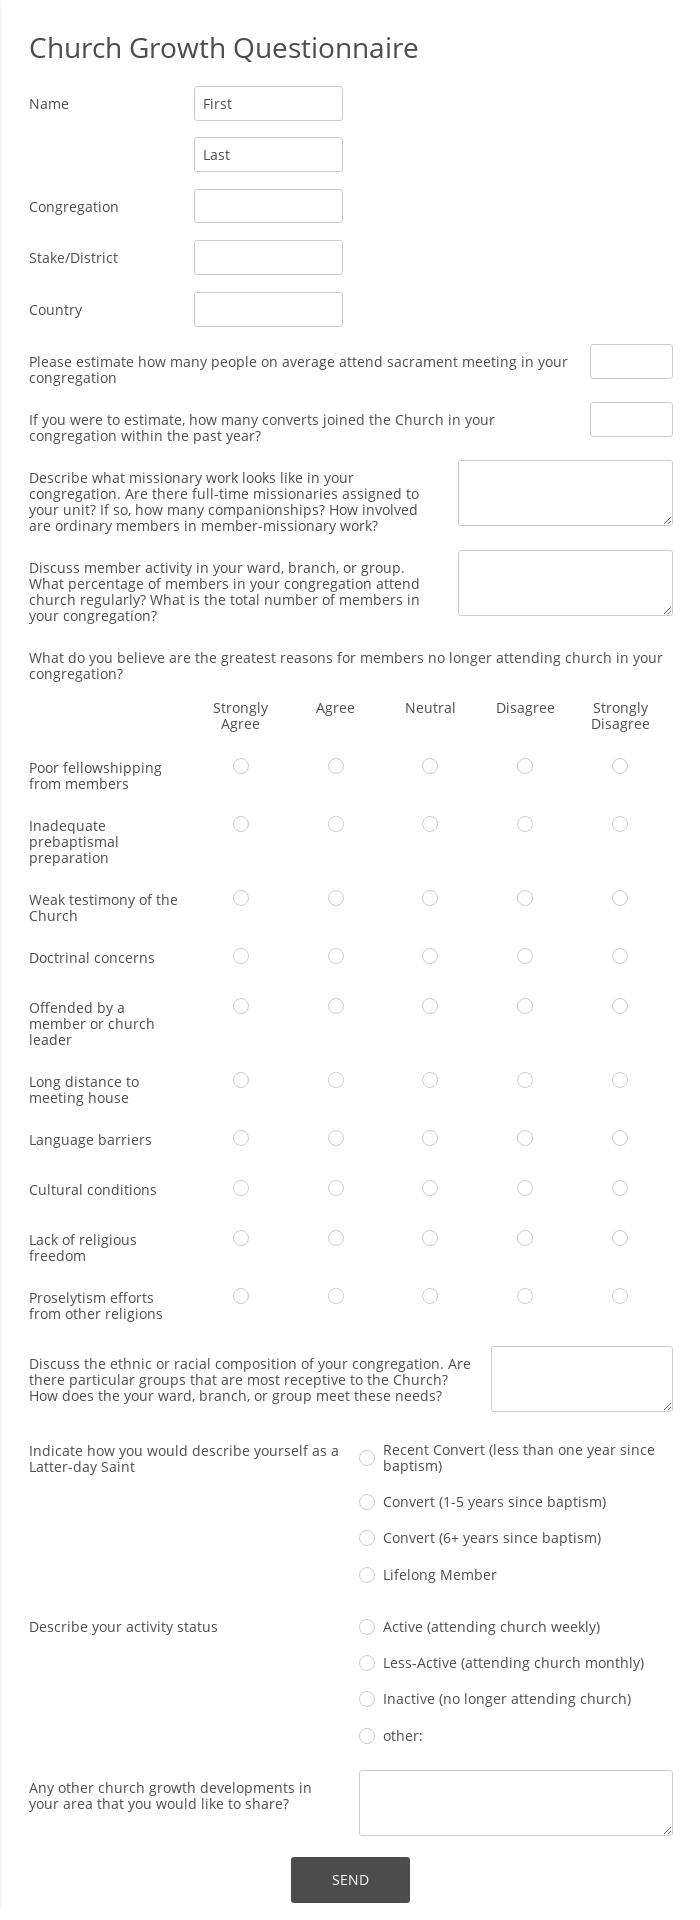 Church Growth Questionnaire